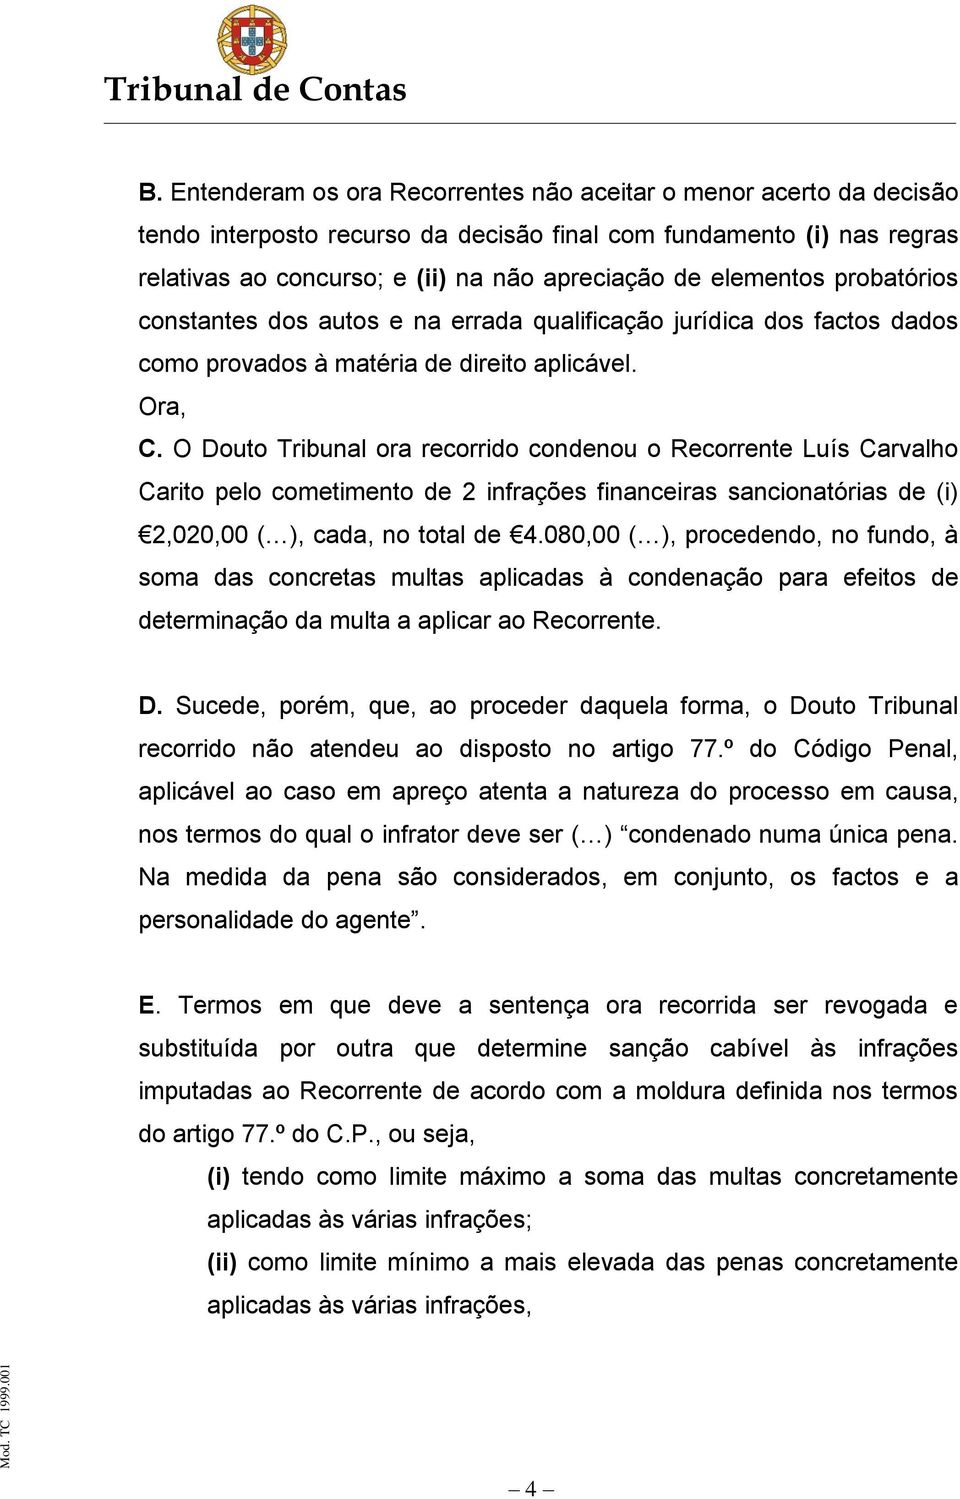 O Douto Tribunal ora recorrido condenou o Recorrente Luís Carvalho Carito pelo cometimento de 2 infrações financeiras sancionatórias de (i) 2,020,00 ( ), cada, no total de 4.